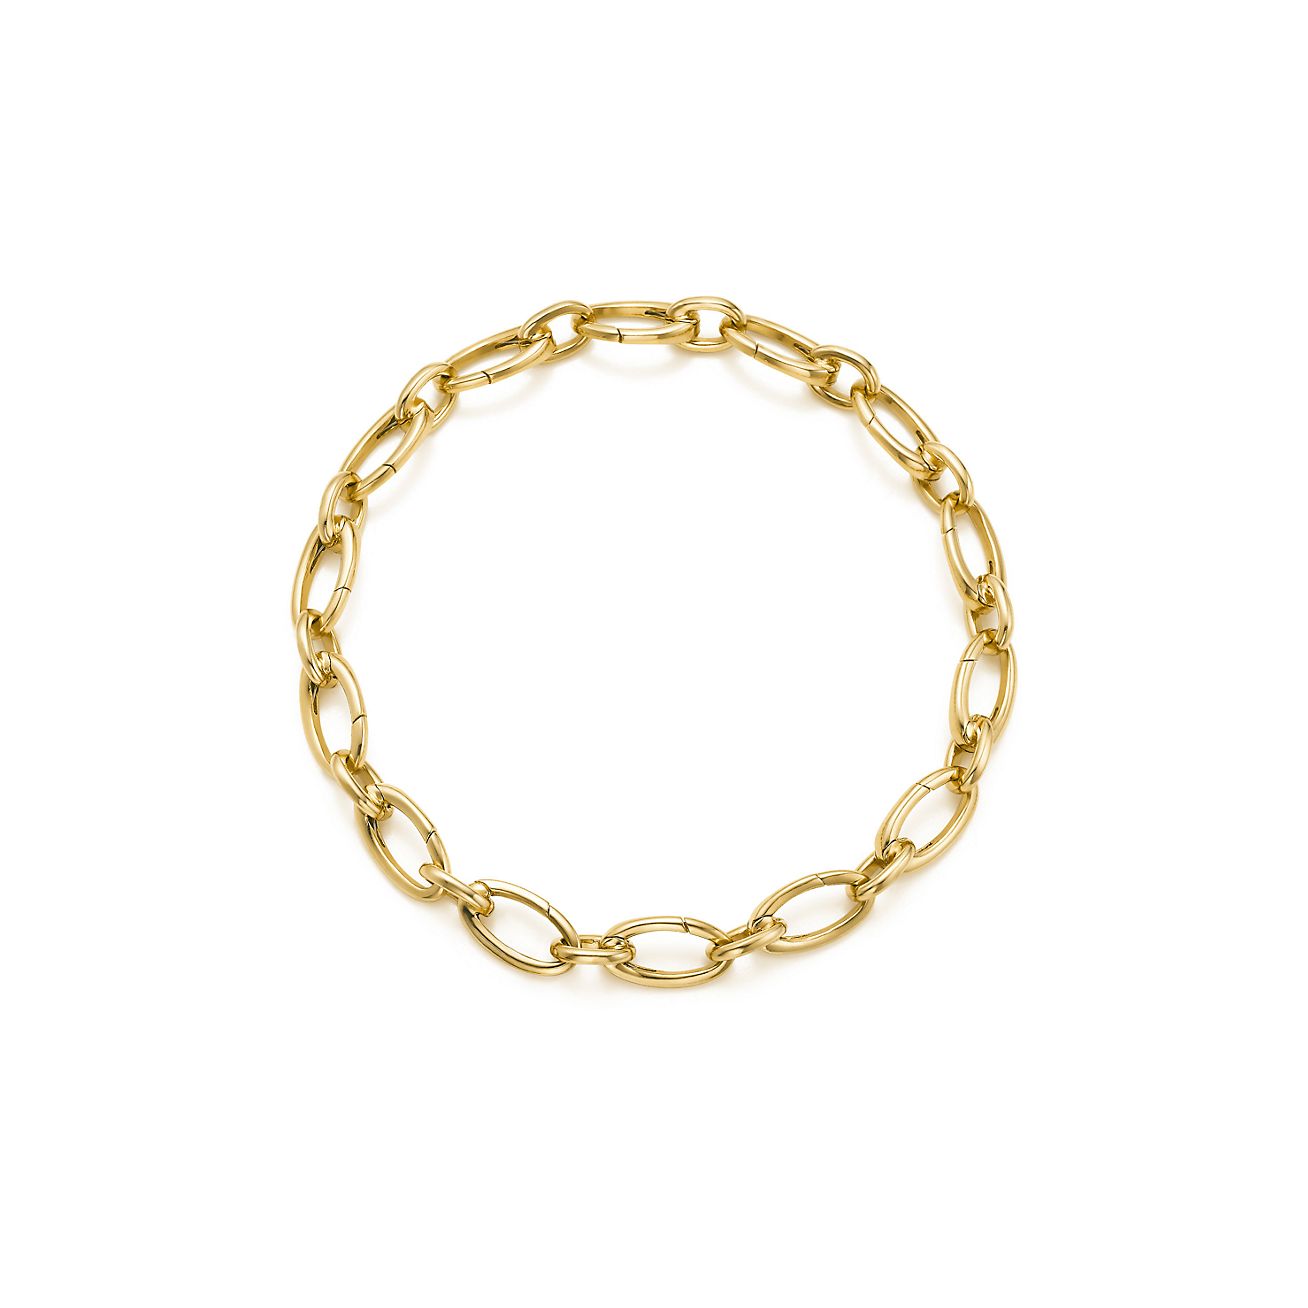 Link clasp bracelet in 18k gold, 7.5 